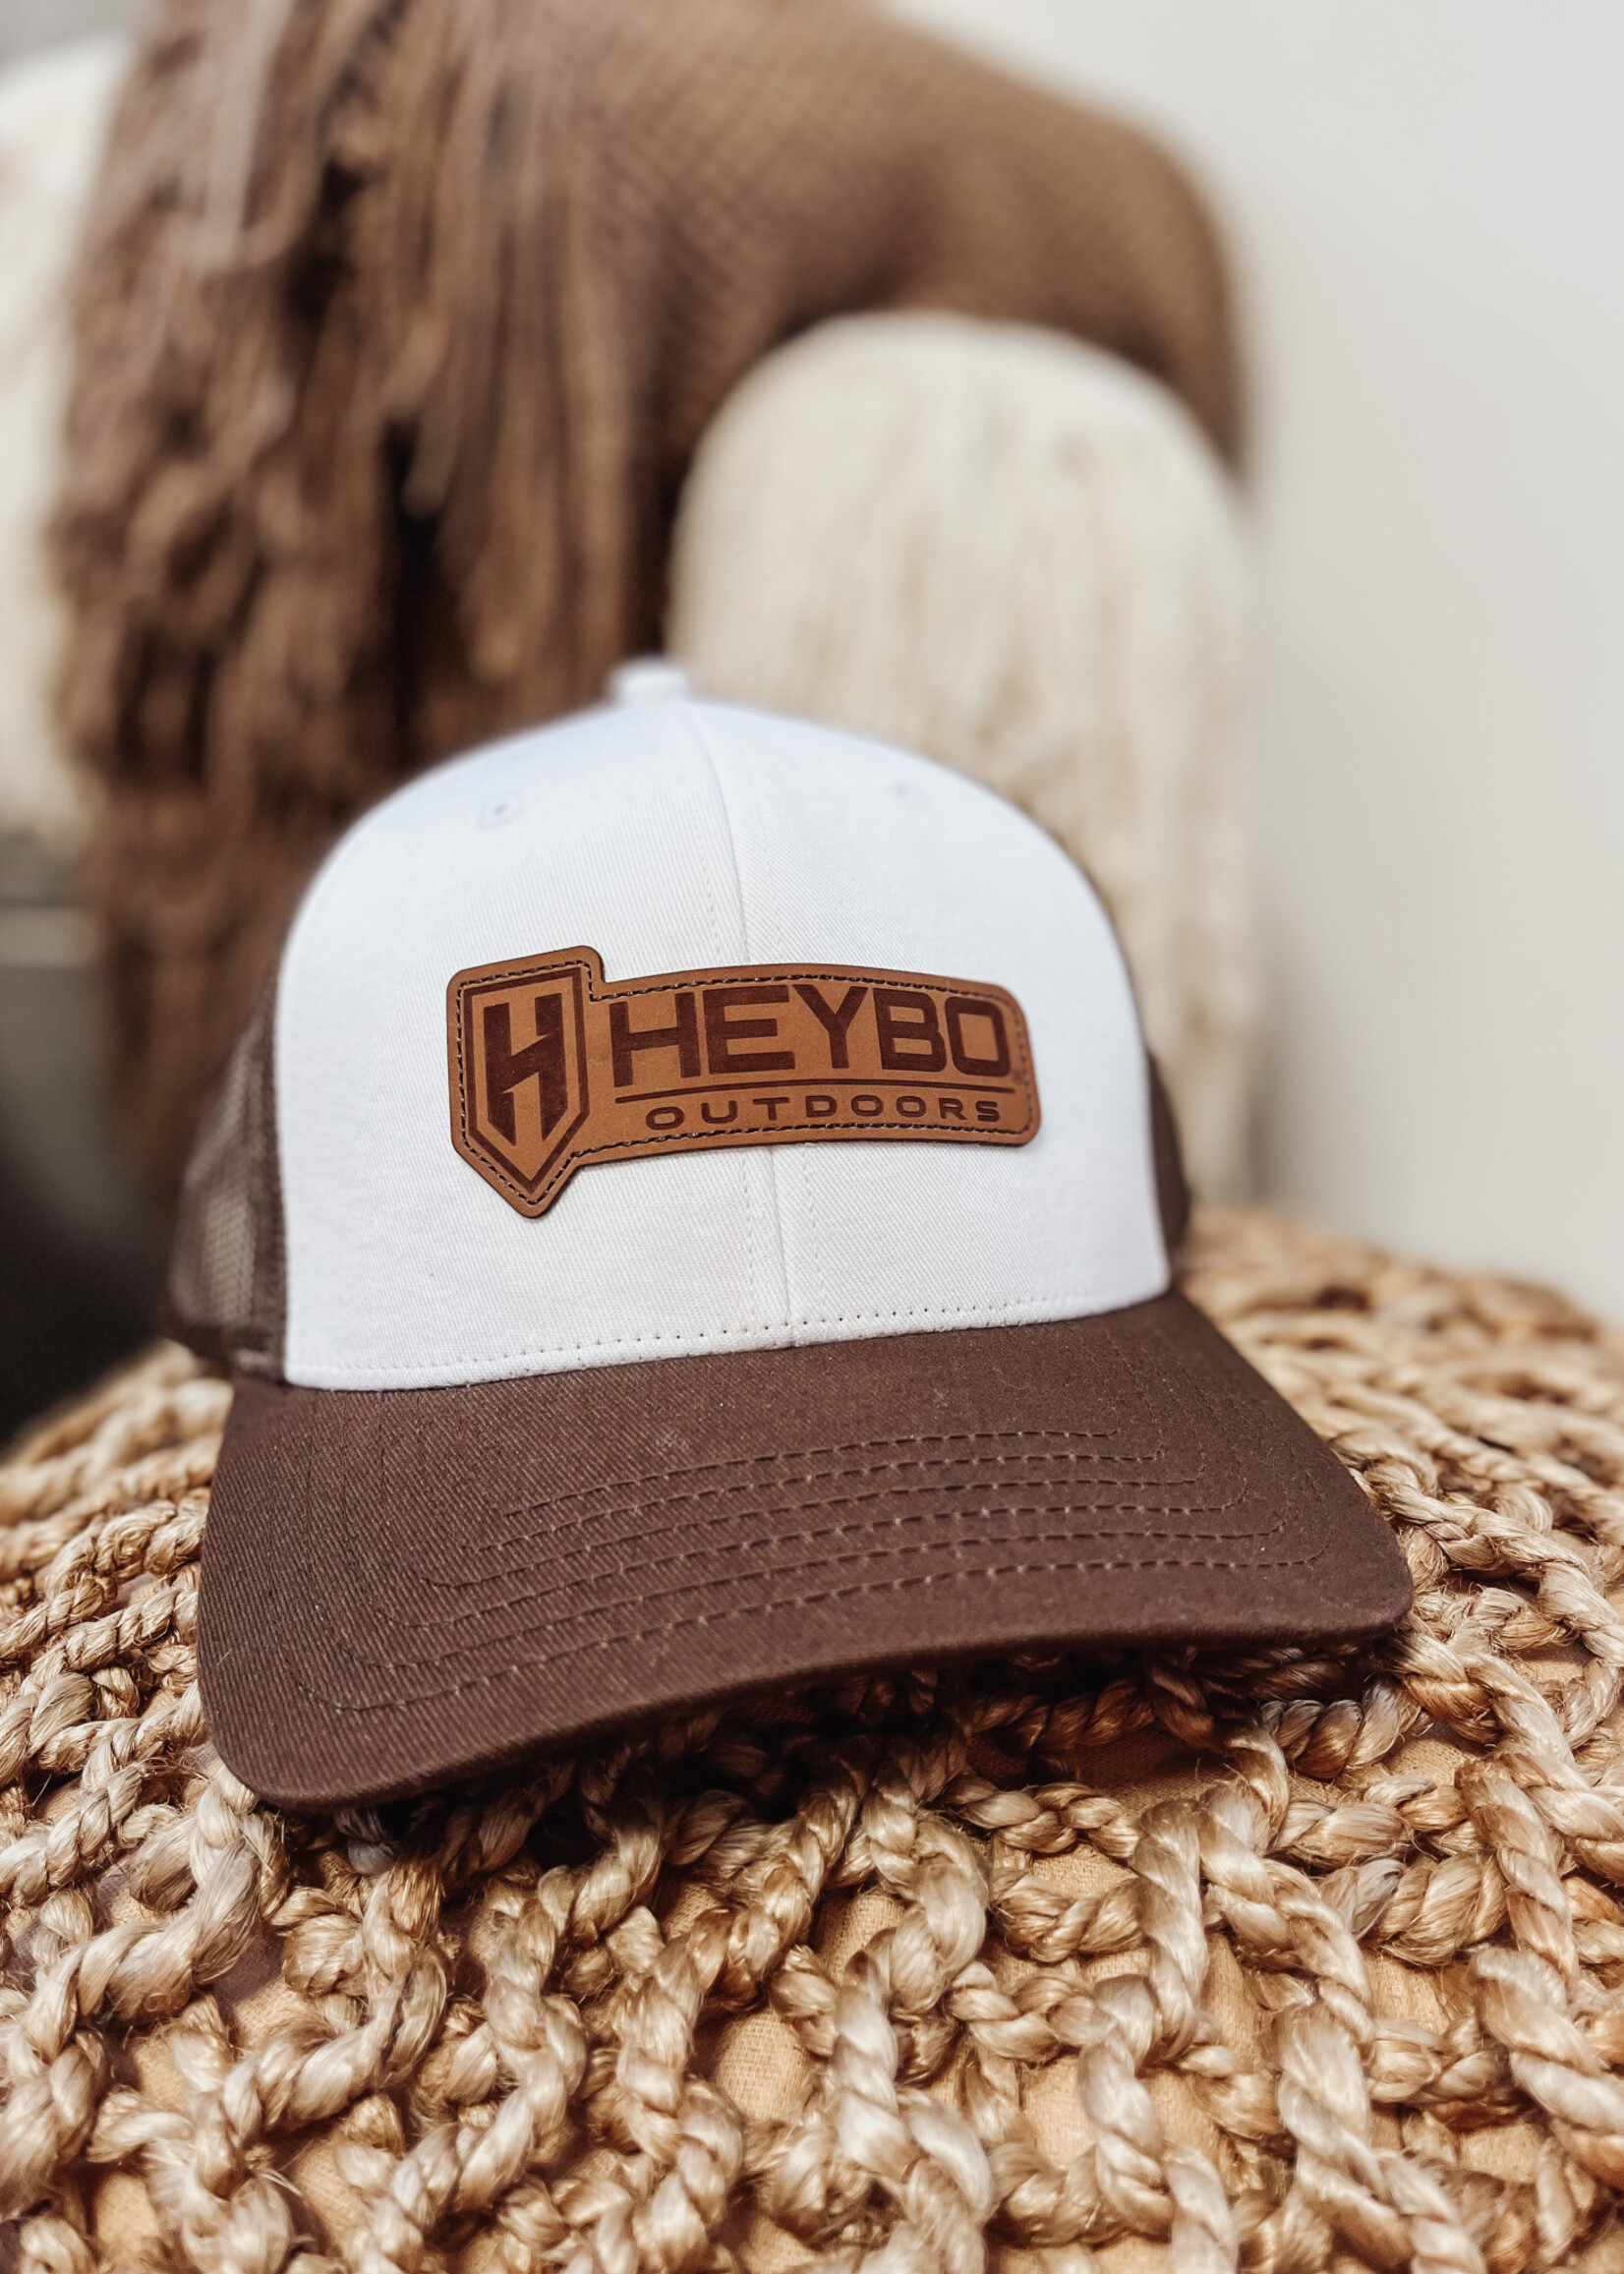 HEYBO Outdoors Heybo Men's Hats